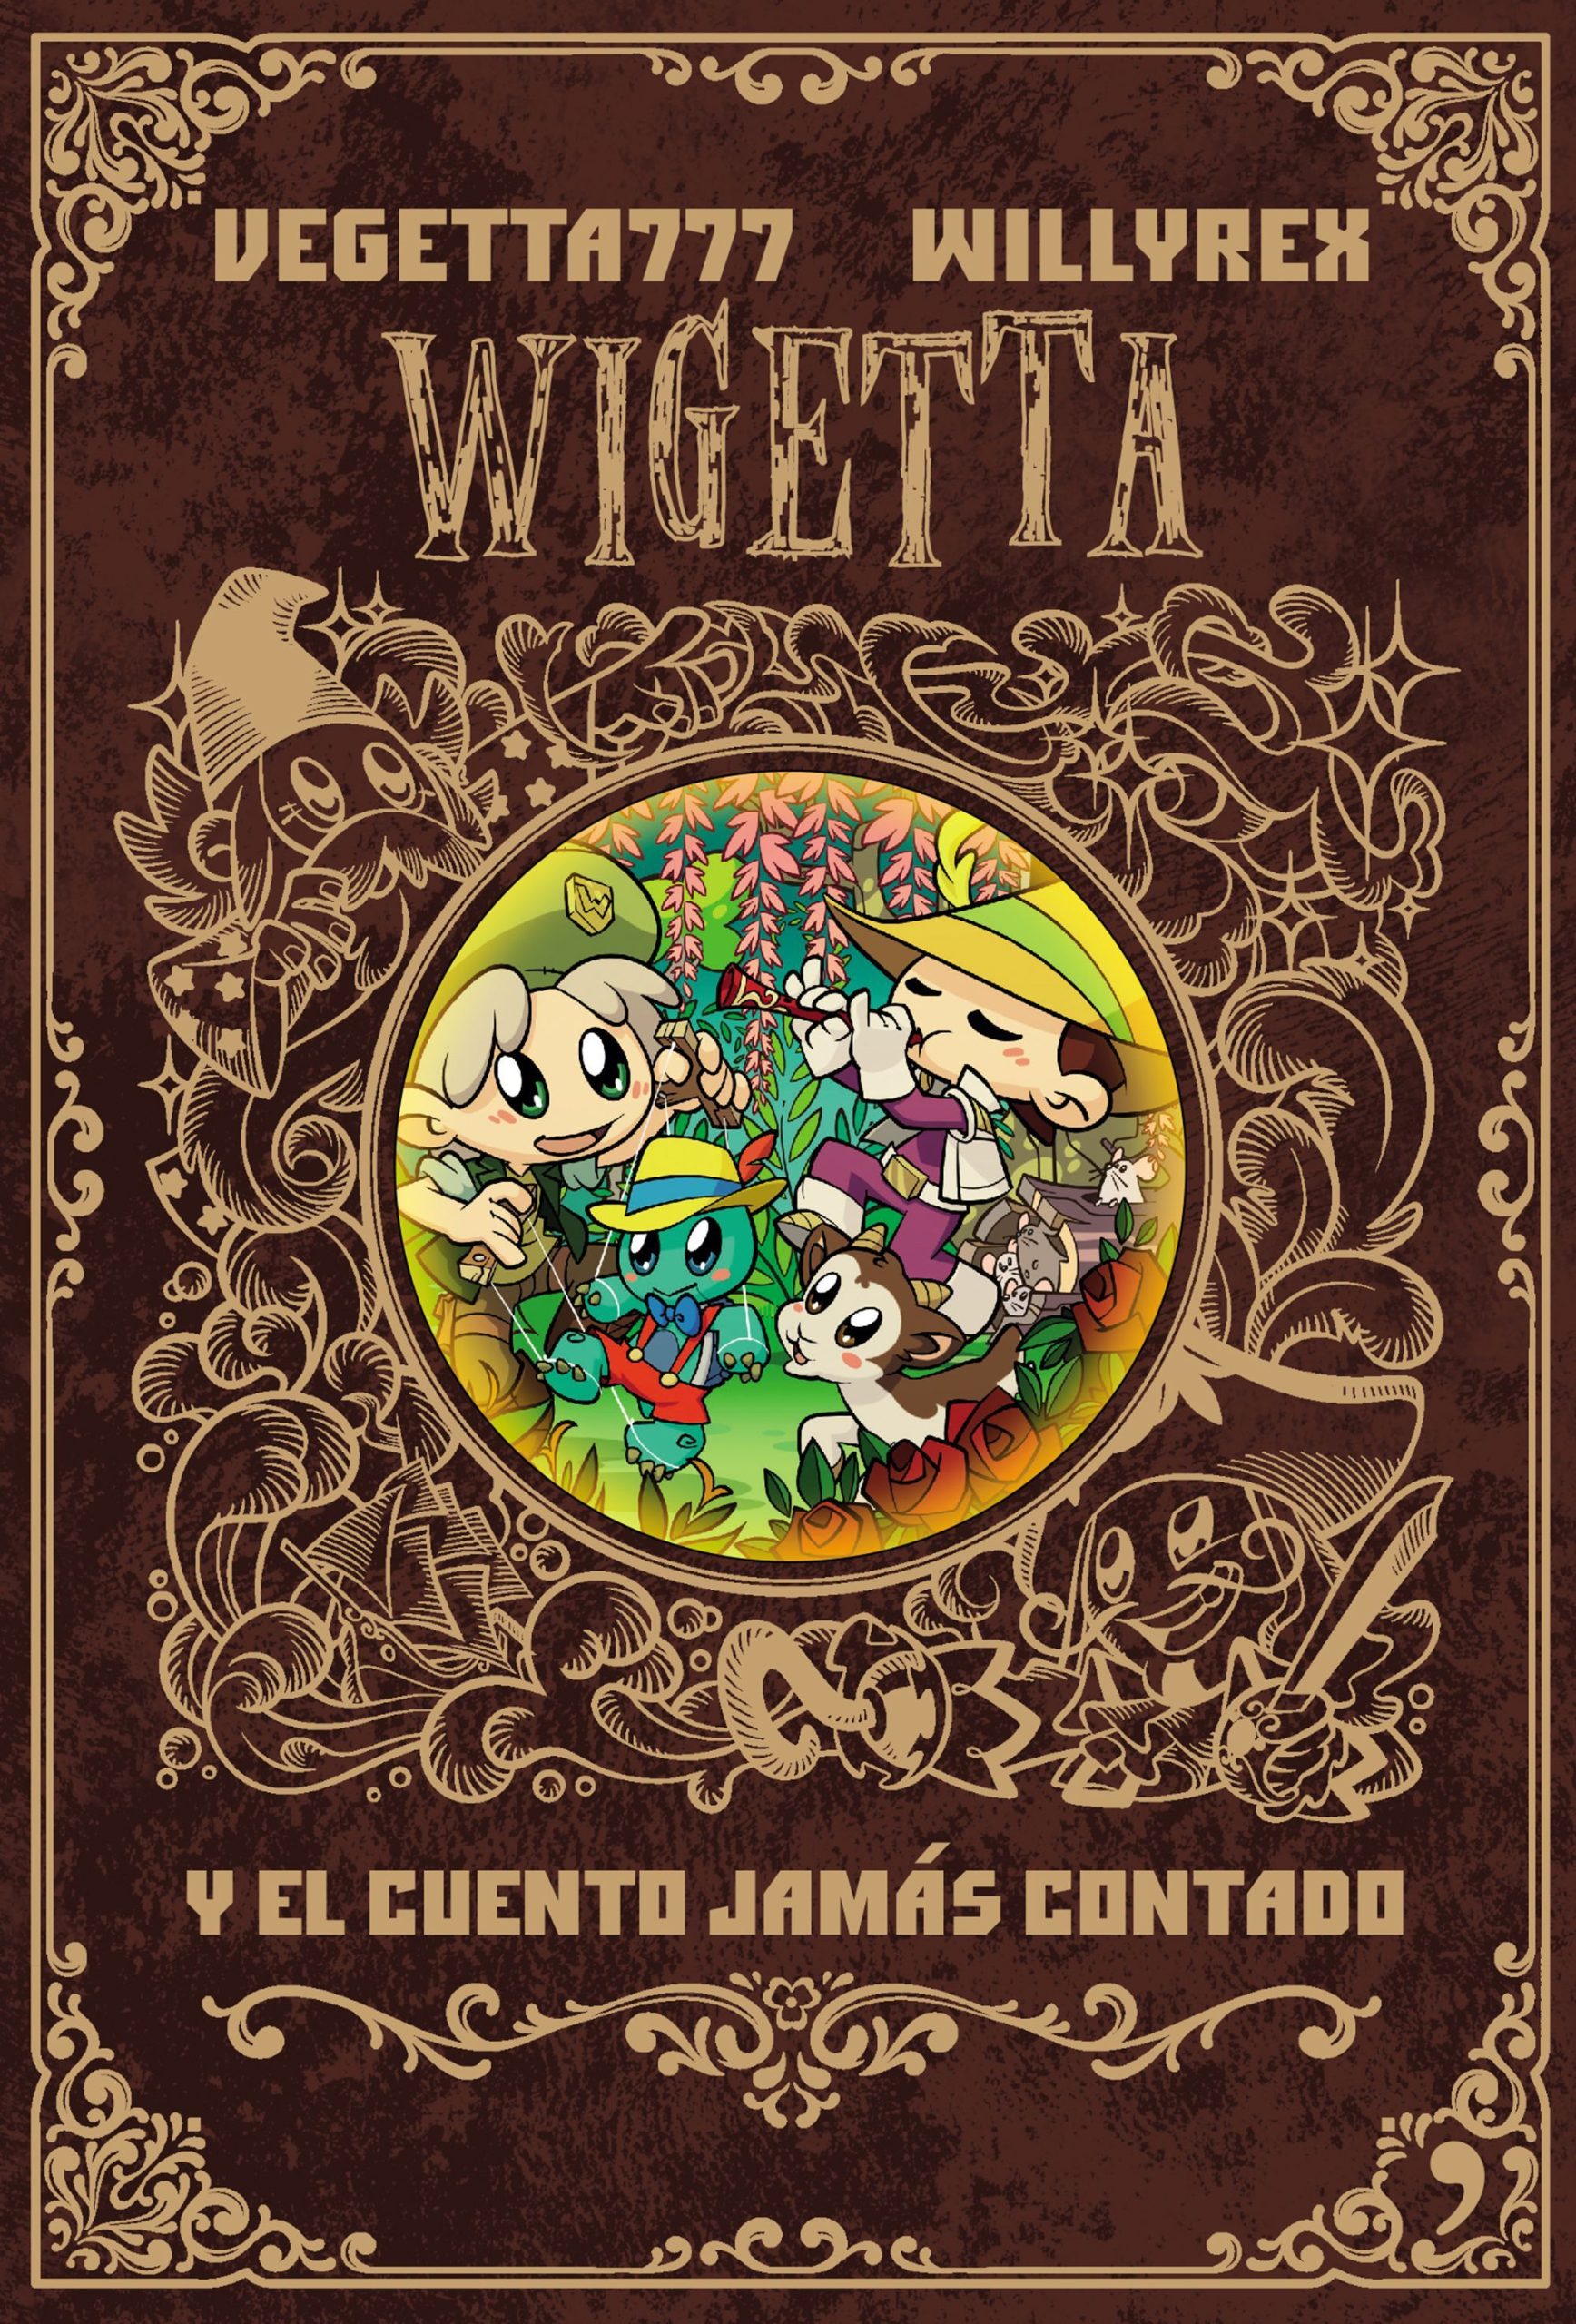 Wigetta y el cuento jamás contado - Vegetta777 Y Willyrex - Temas de hoy - 9789584263803